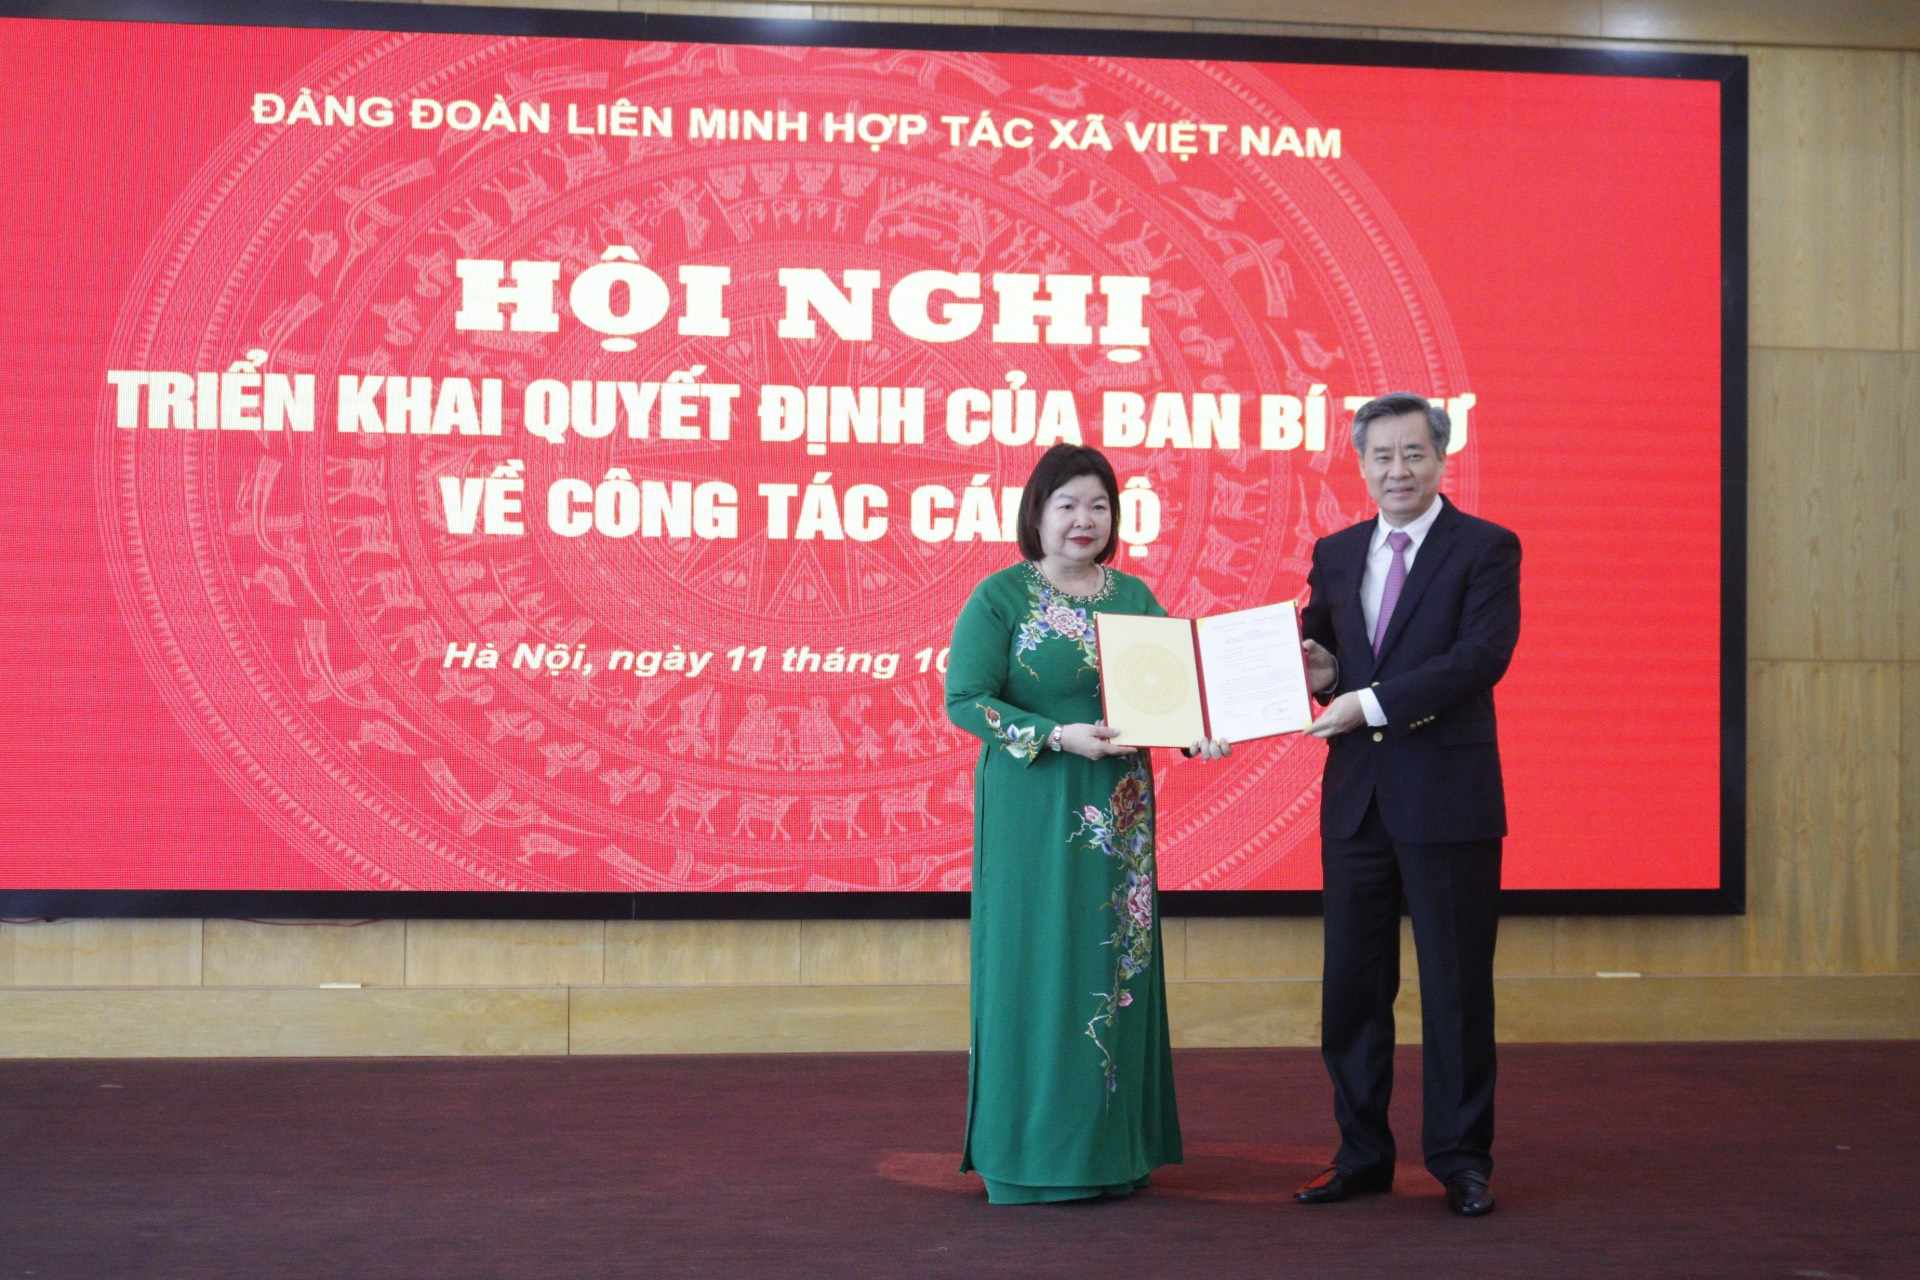 Bà Cao Xuân Thu Vân được Ban Bí thư chỉ định giữ chức Bí thư Đảng đoàn Liên minh Hợp tác xã Việt Nam - Ảnh 1.